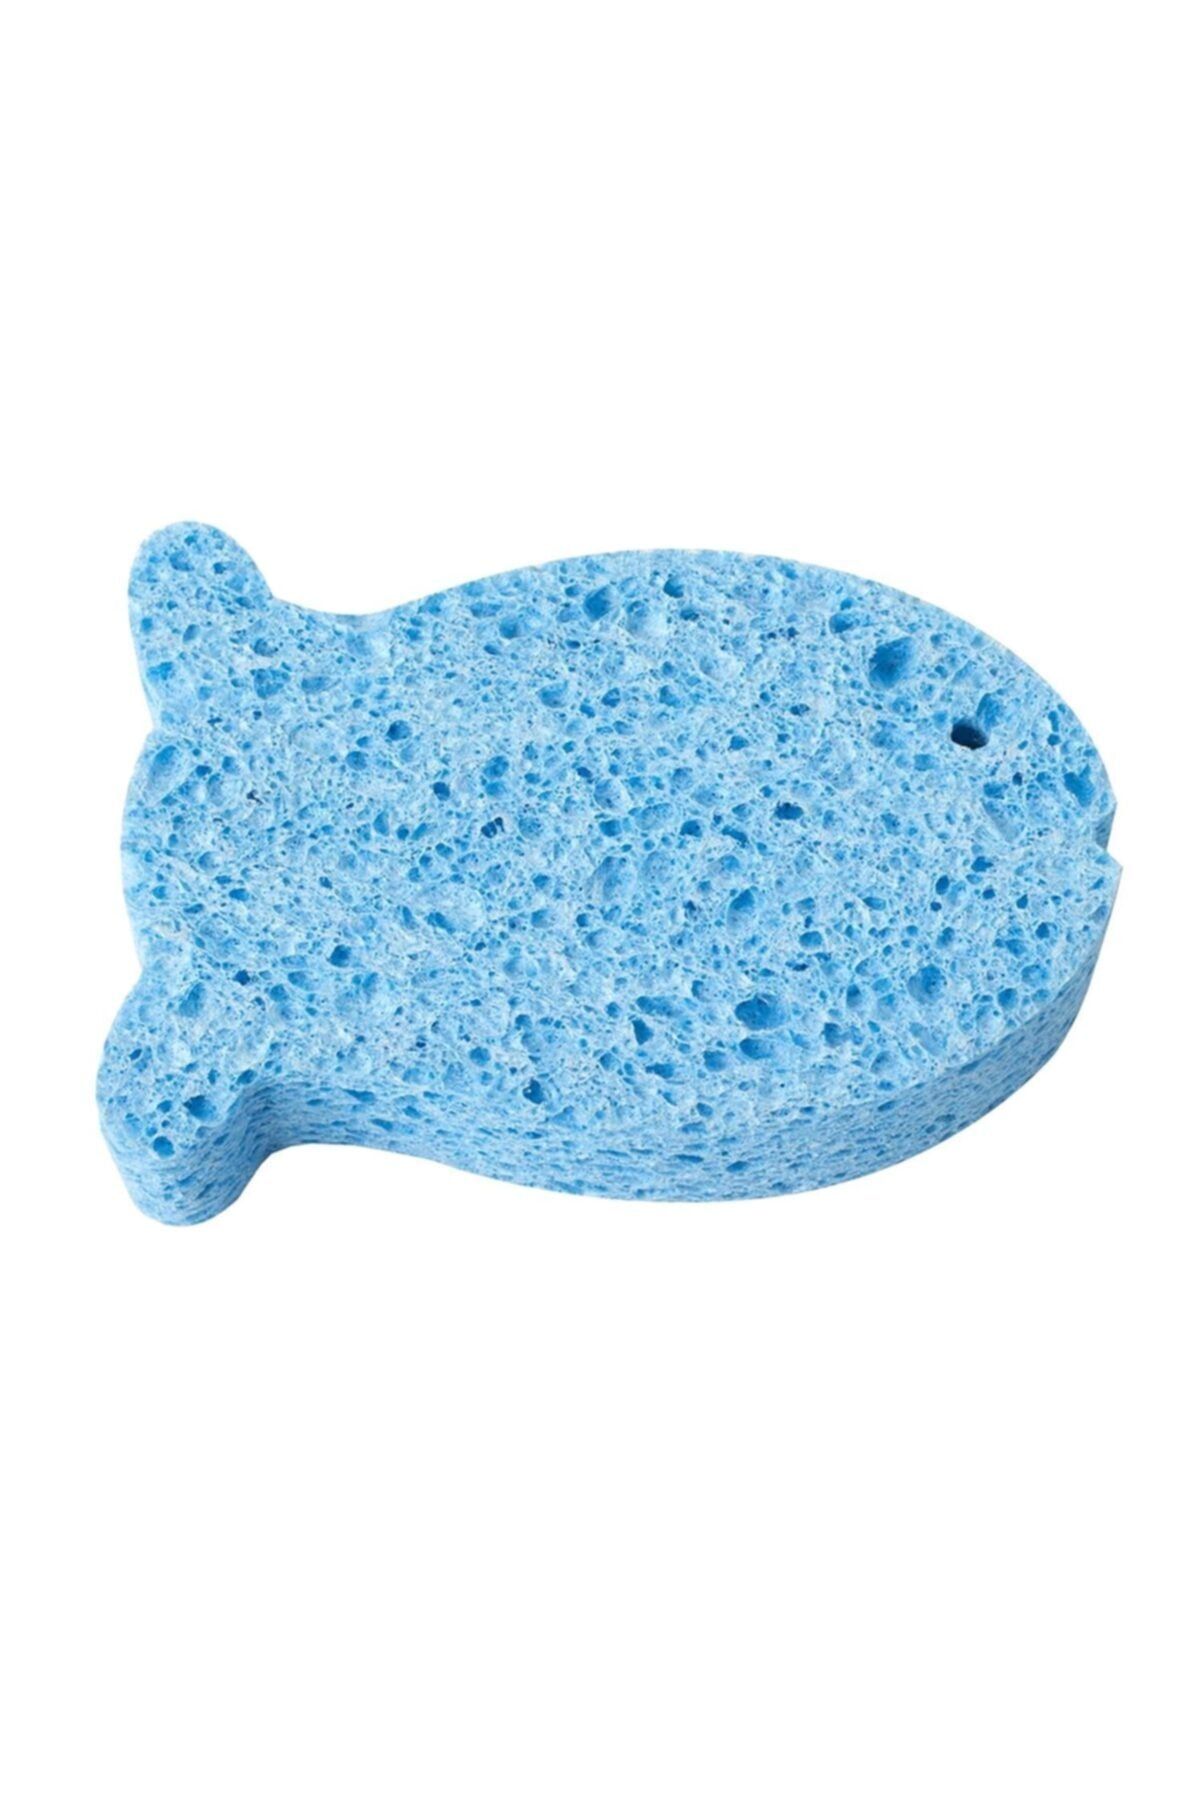 Wee Baby Doğal Selülozik Banyo Süngeri Mavi 915